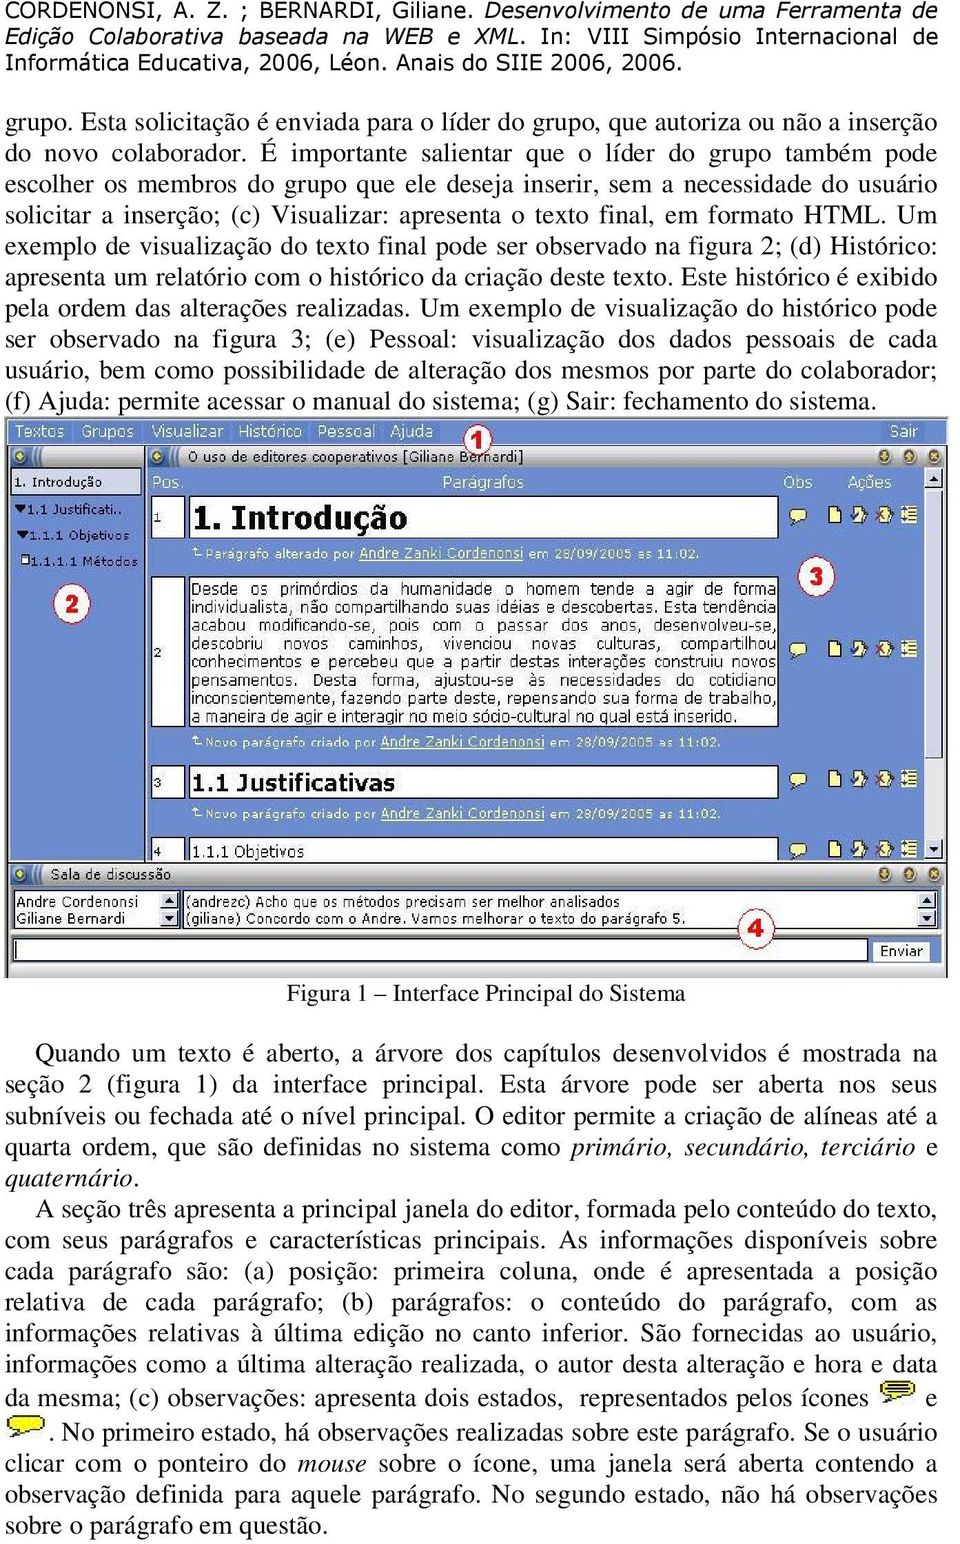 final, em formato HTML. Um exemplo de visualização do texto final pode ser observado na figura 2; (d) Histórico: apresenta um relatório com o histórico da criação deste texto.